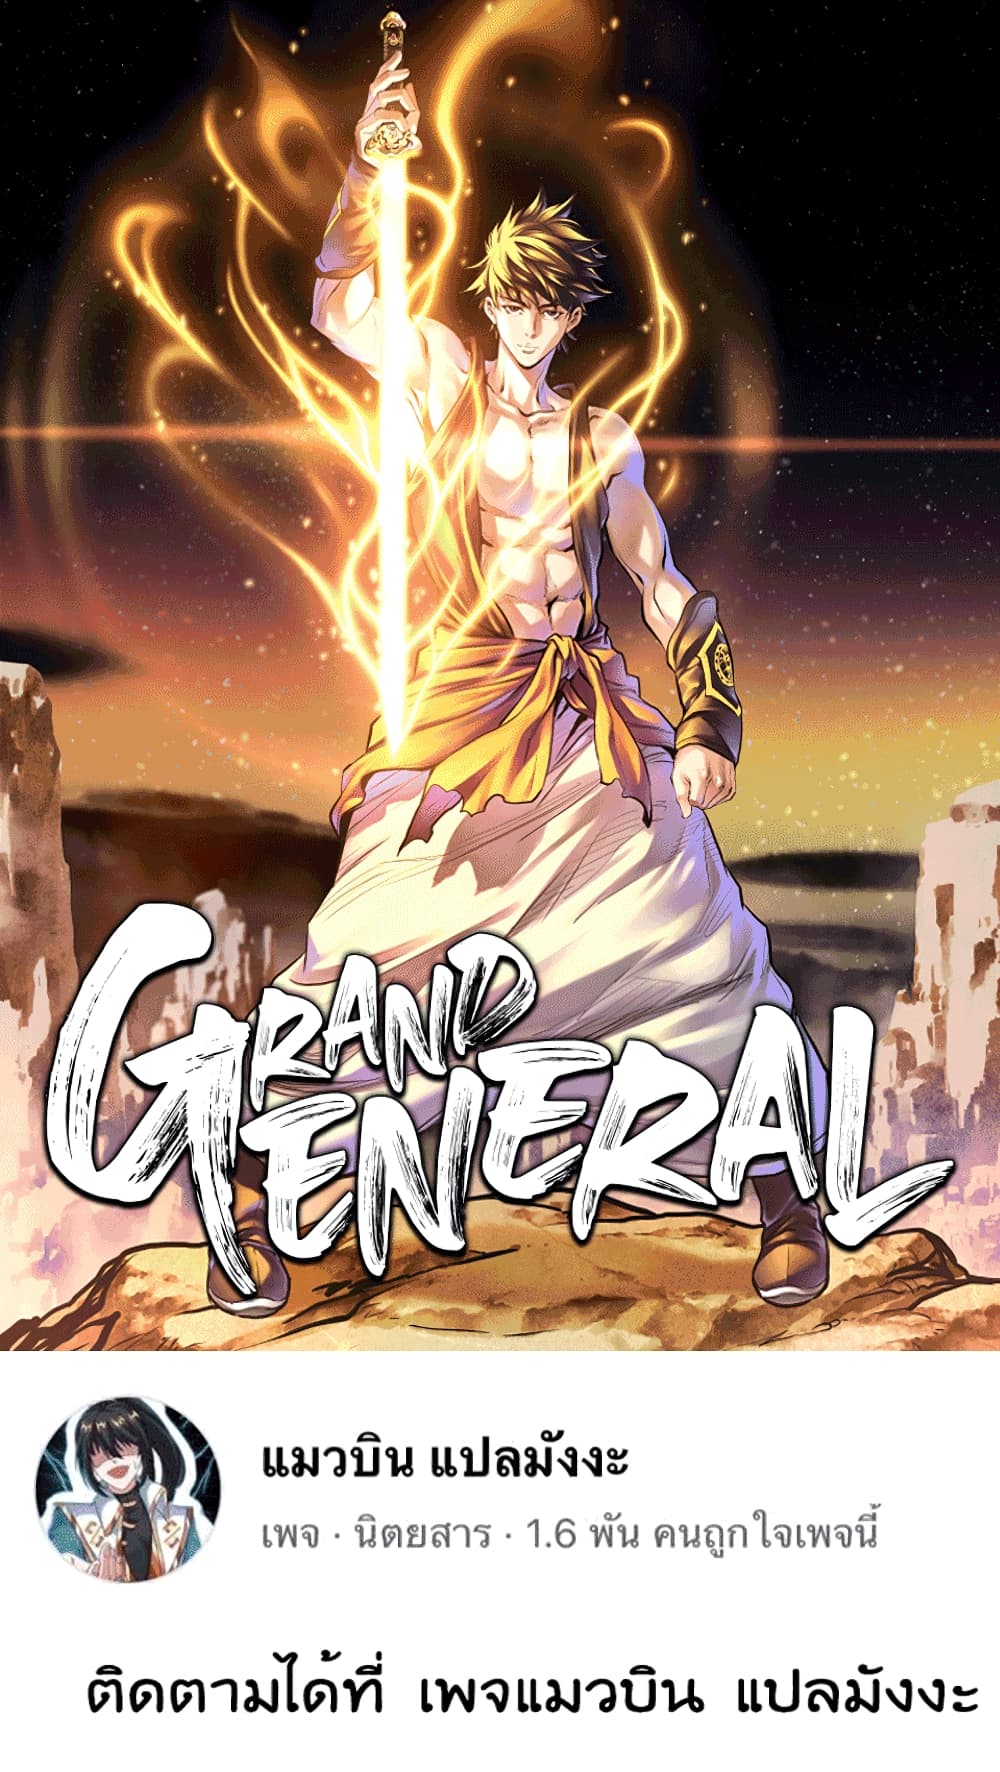 Grand General 2 026